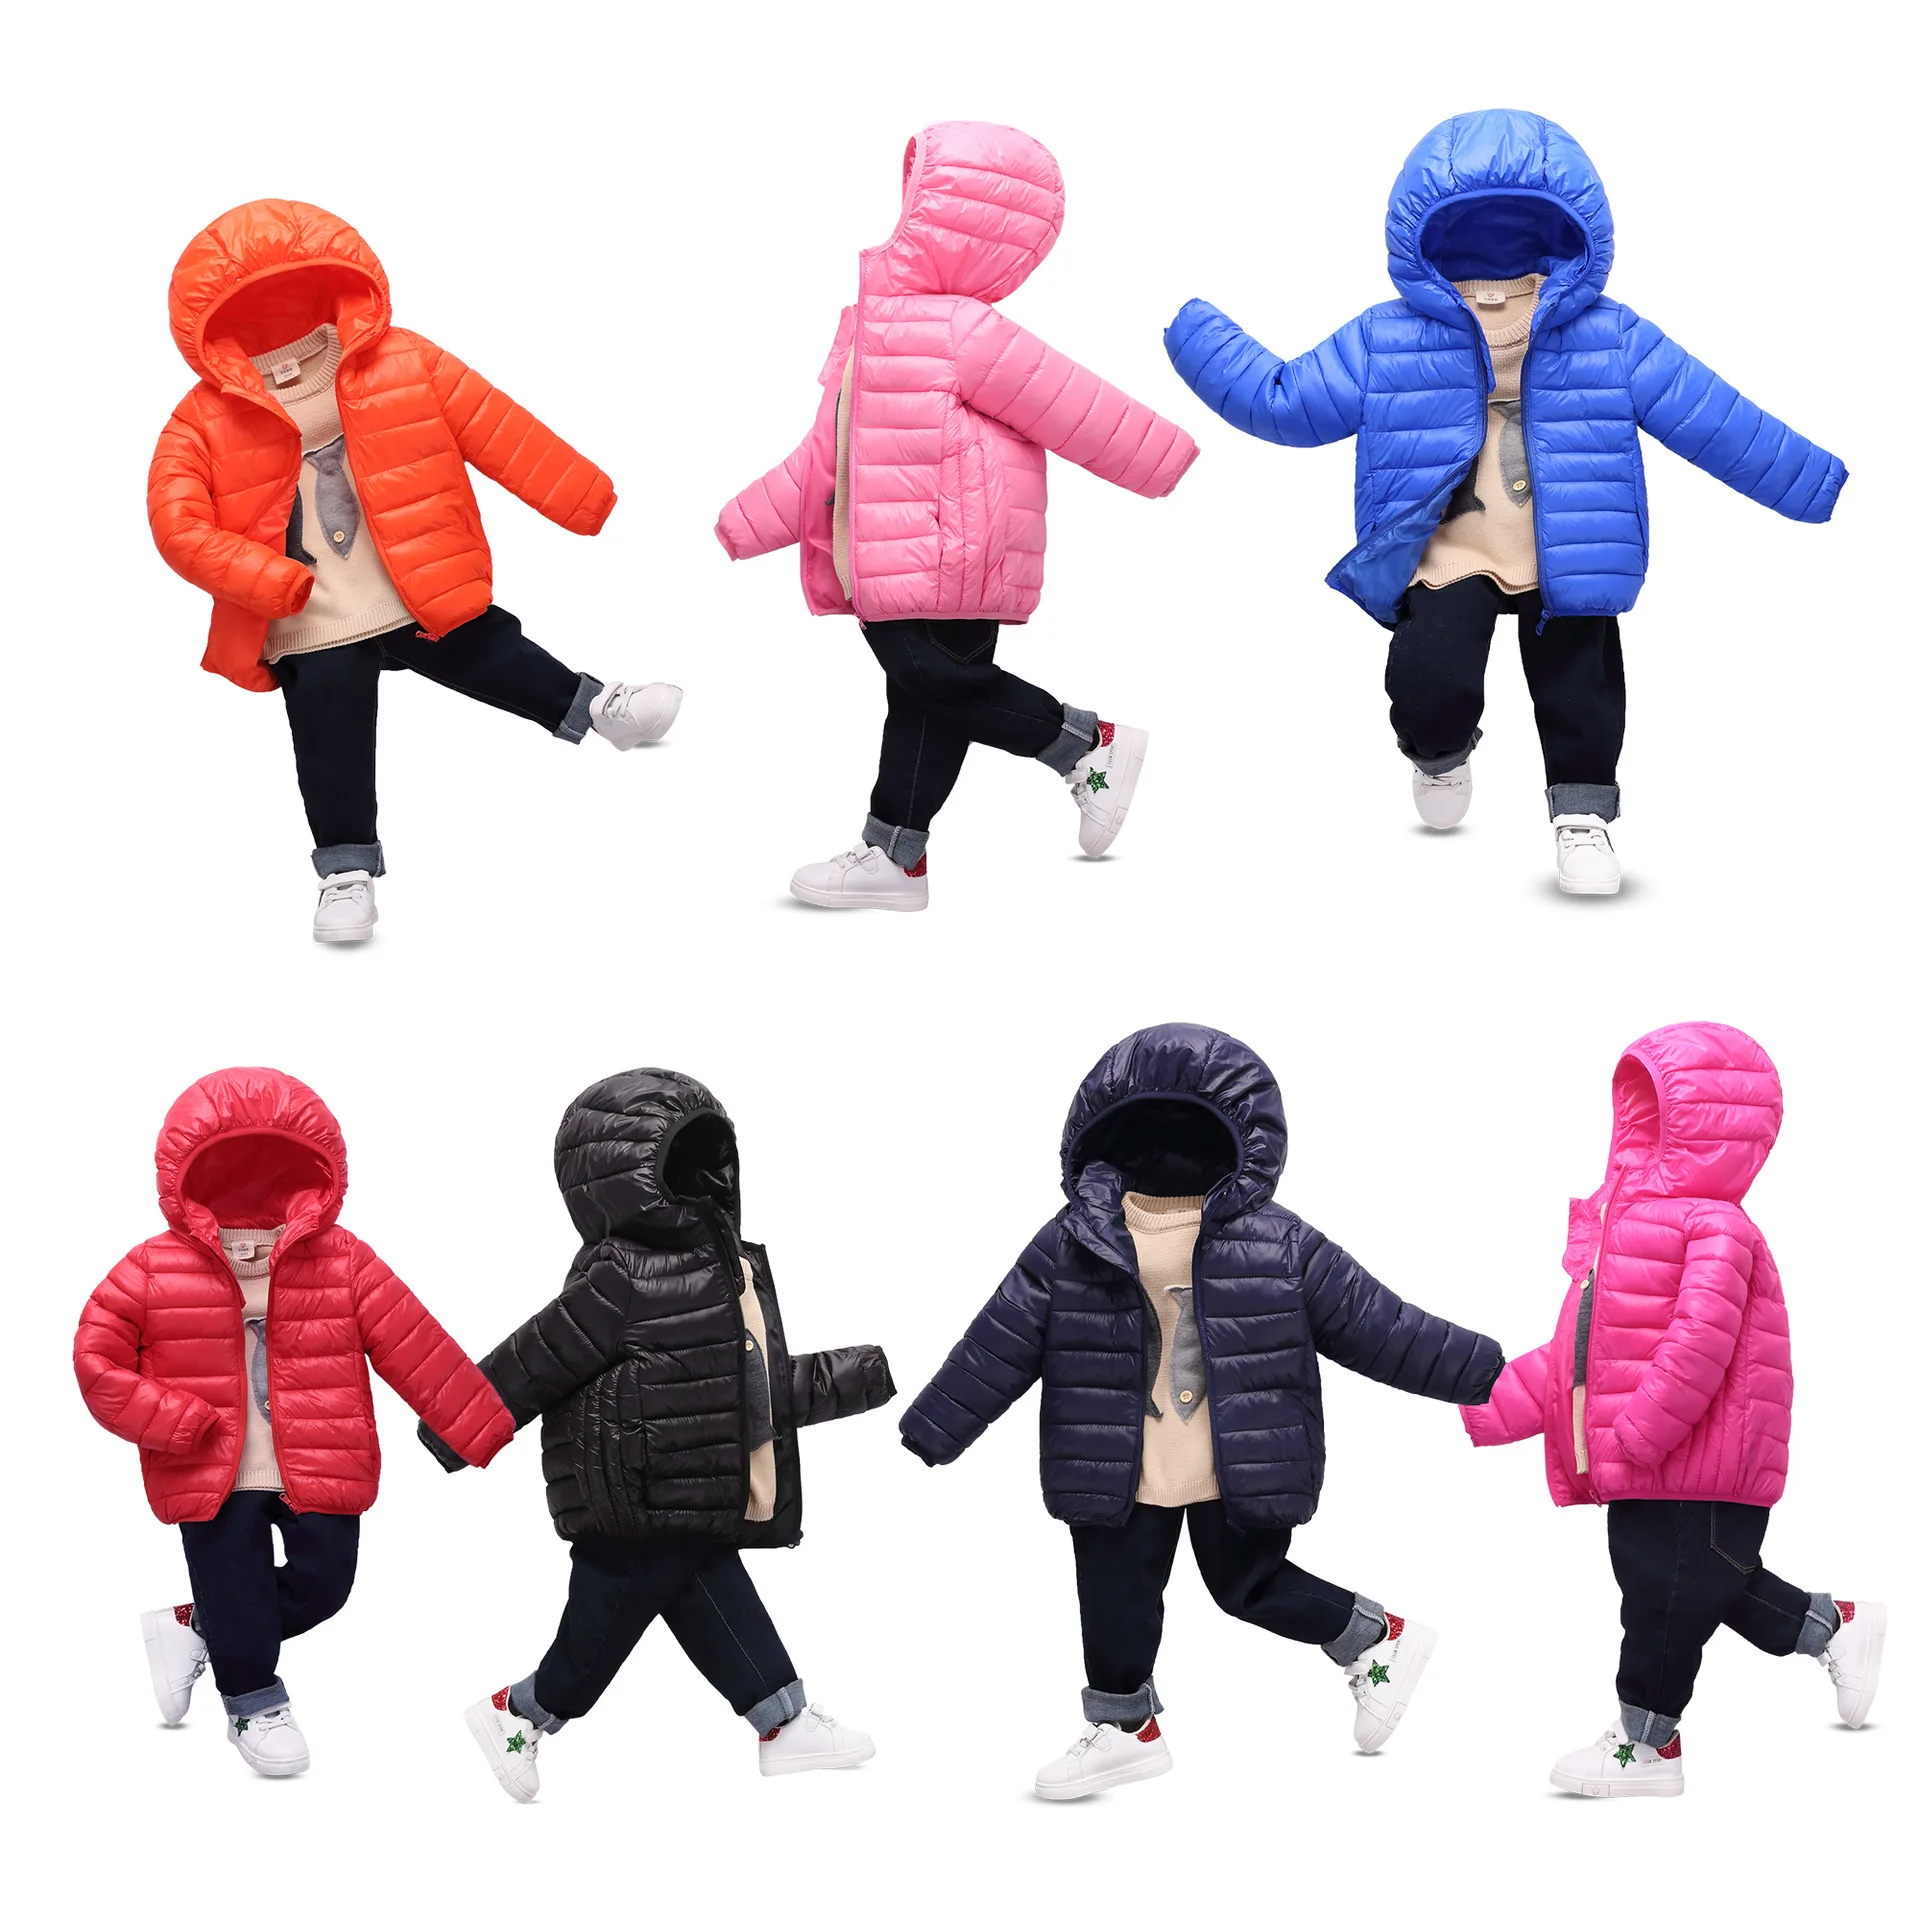 Г. Детское пальто осенне-зимняя верхняя одежда для мальчиков, пальто теплое детей, одежда верхняя одежда с капюшоном для мальчиков и девочек 8, 10, 12, 14 лет